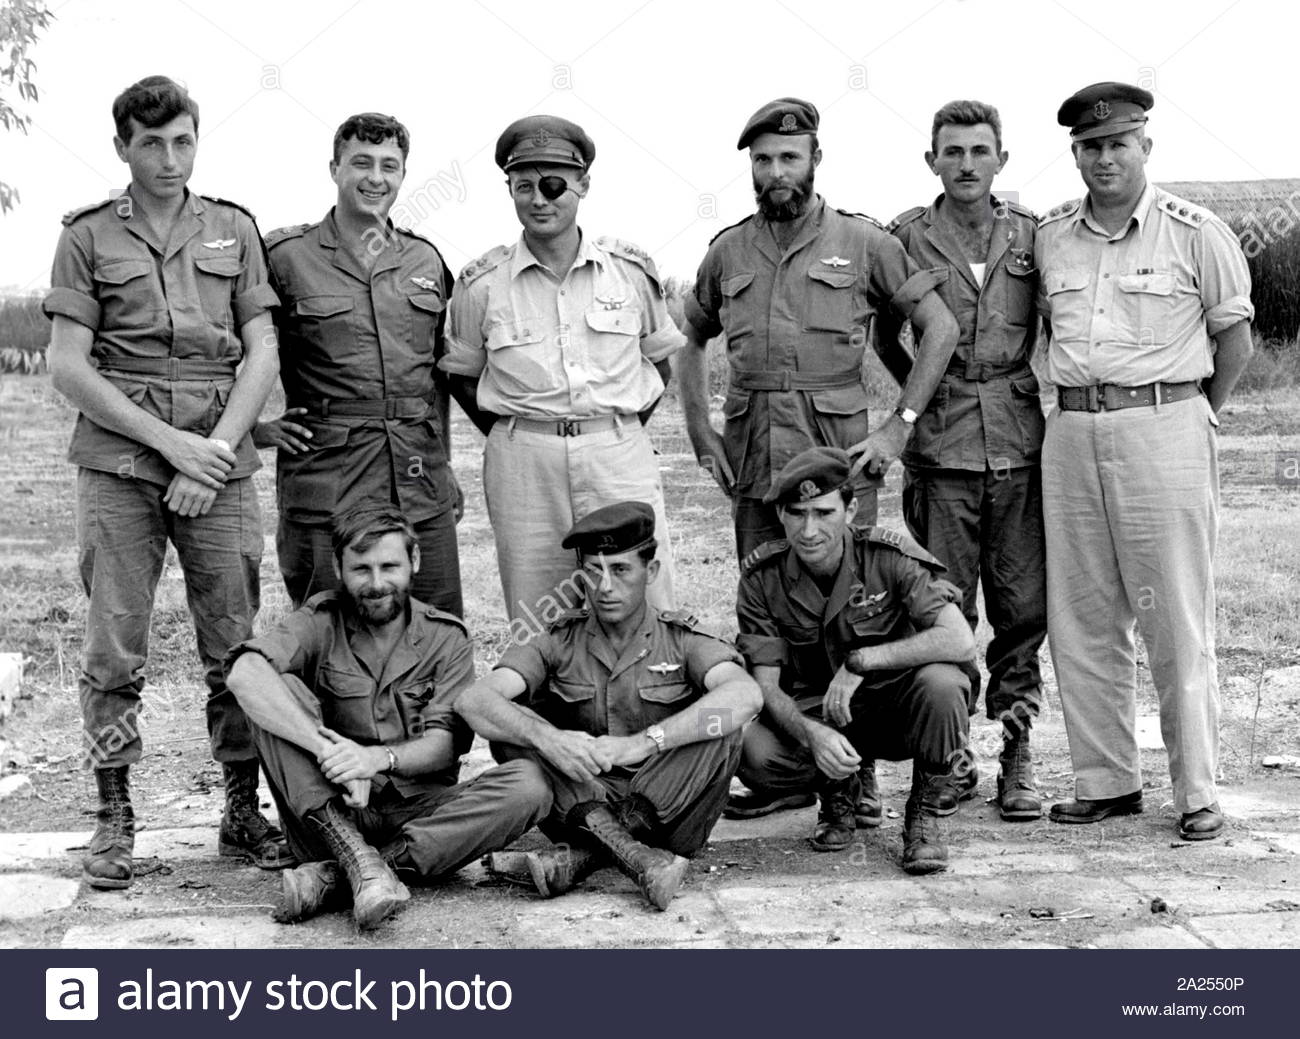 Betrieb Egged (Kuntilla Betrieb), war eine israelische Militäroperation in der Nacht des 28./29. Oktober 1955 ausgeführt, dass eine ägyptische Militär Post an Kuntilla, im nord-östlichen Sinai ausgerichtet. Israelischen Kommandanten stellen nach dem Betrieb Egged. Stehend nach rechts: Lt. Meir Har-Zion, Maj Ariel Sharon, Generalleutnant Moshe Dayan, Kapitän Danny Matt, Lt Moshe Efron, Oberst Asaf Simhoni links; auf dem Boden, l bis r: Kapitän Aharon Davidi, Lt Jaakow Jaakow, Kapitän Rafael Eitan Stockfoto